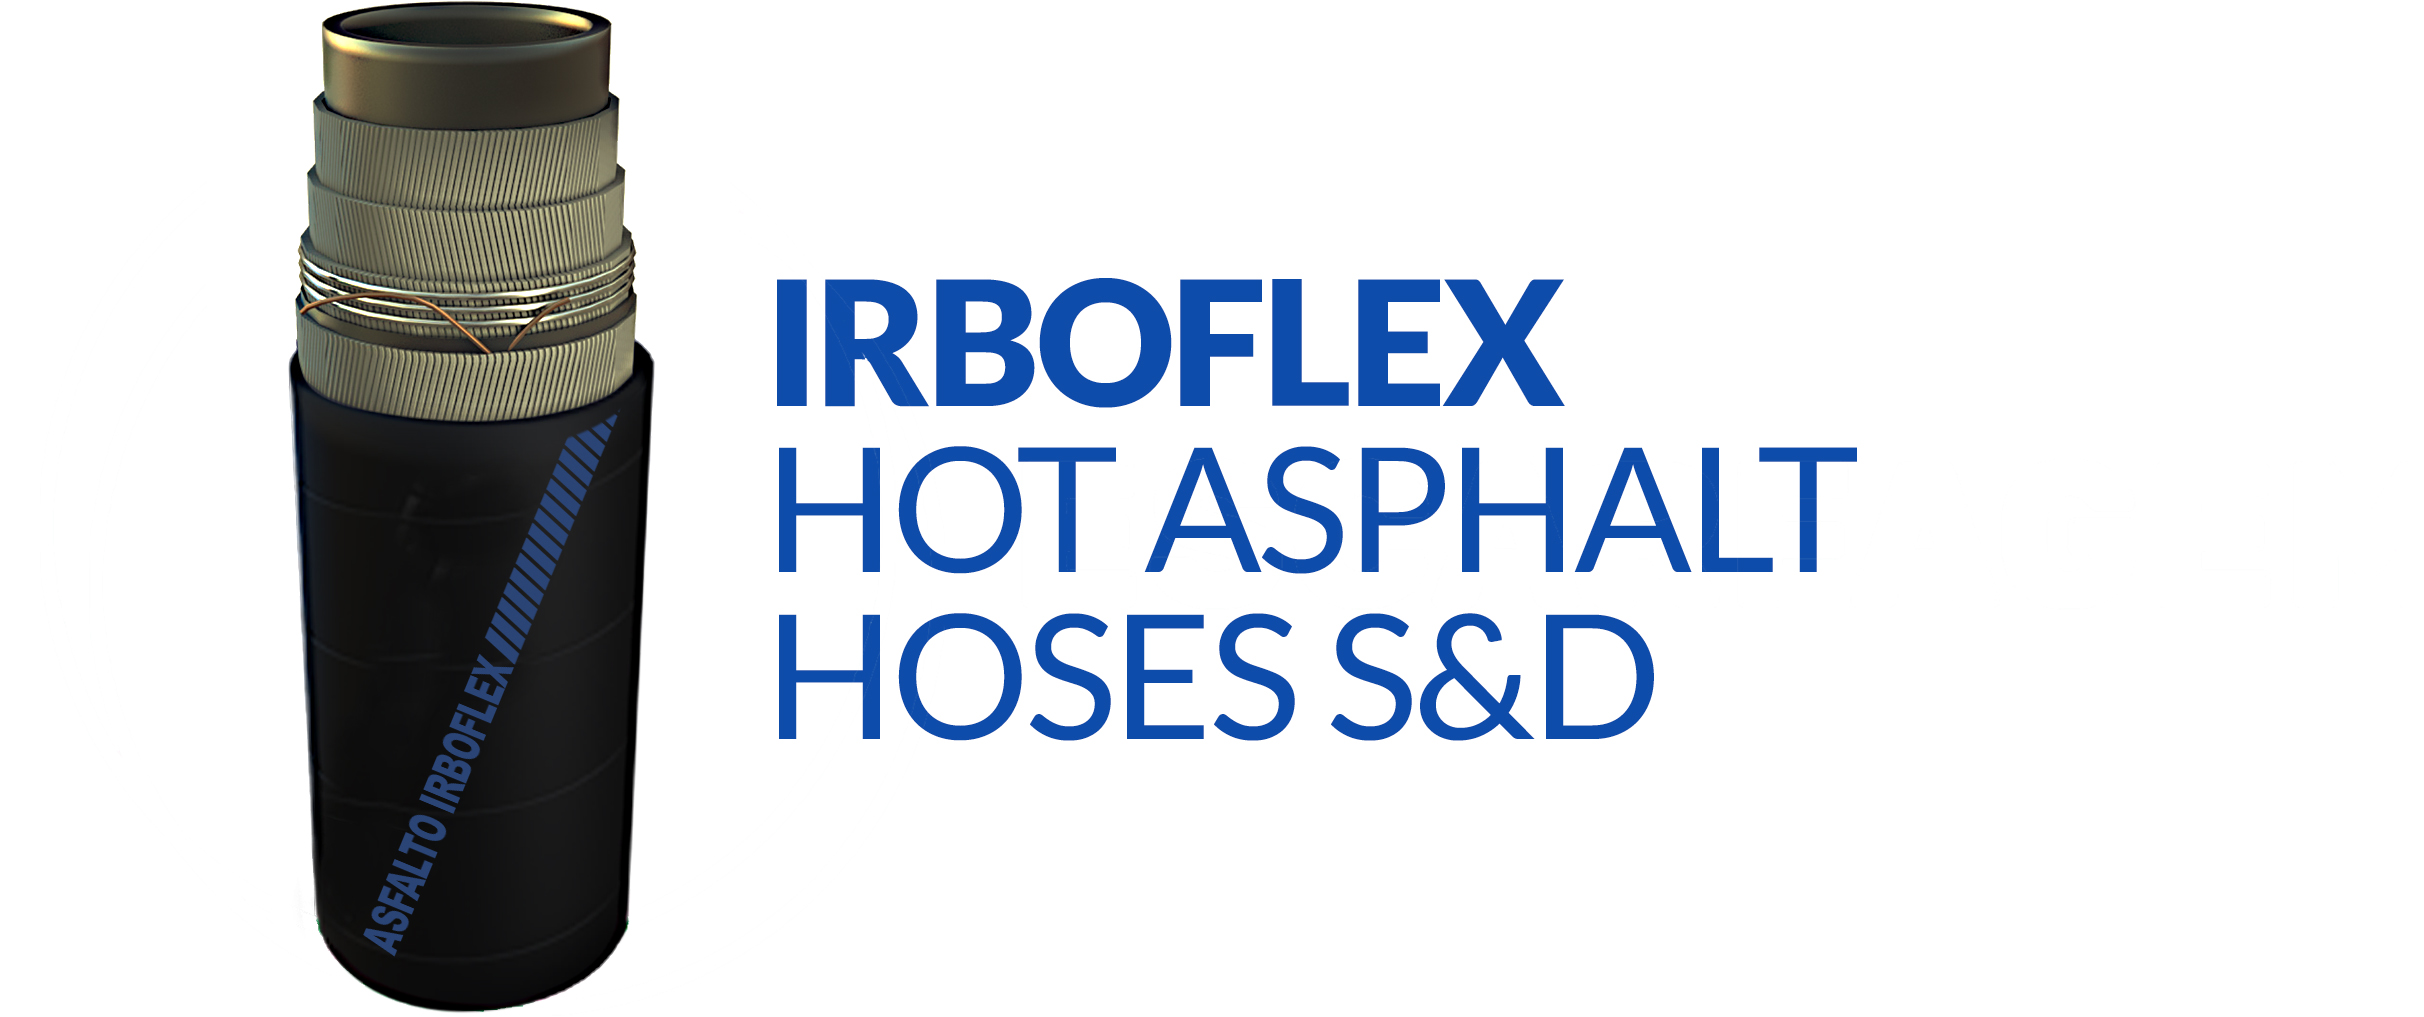 succao-e-descarga-de-asfalto-quente_-_irboflex-hot-asphalt-hoses-sd-copia